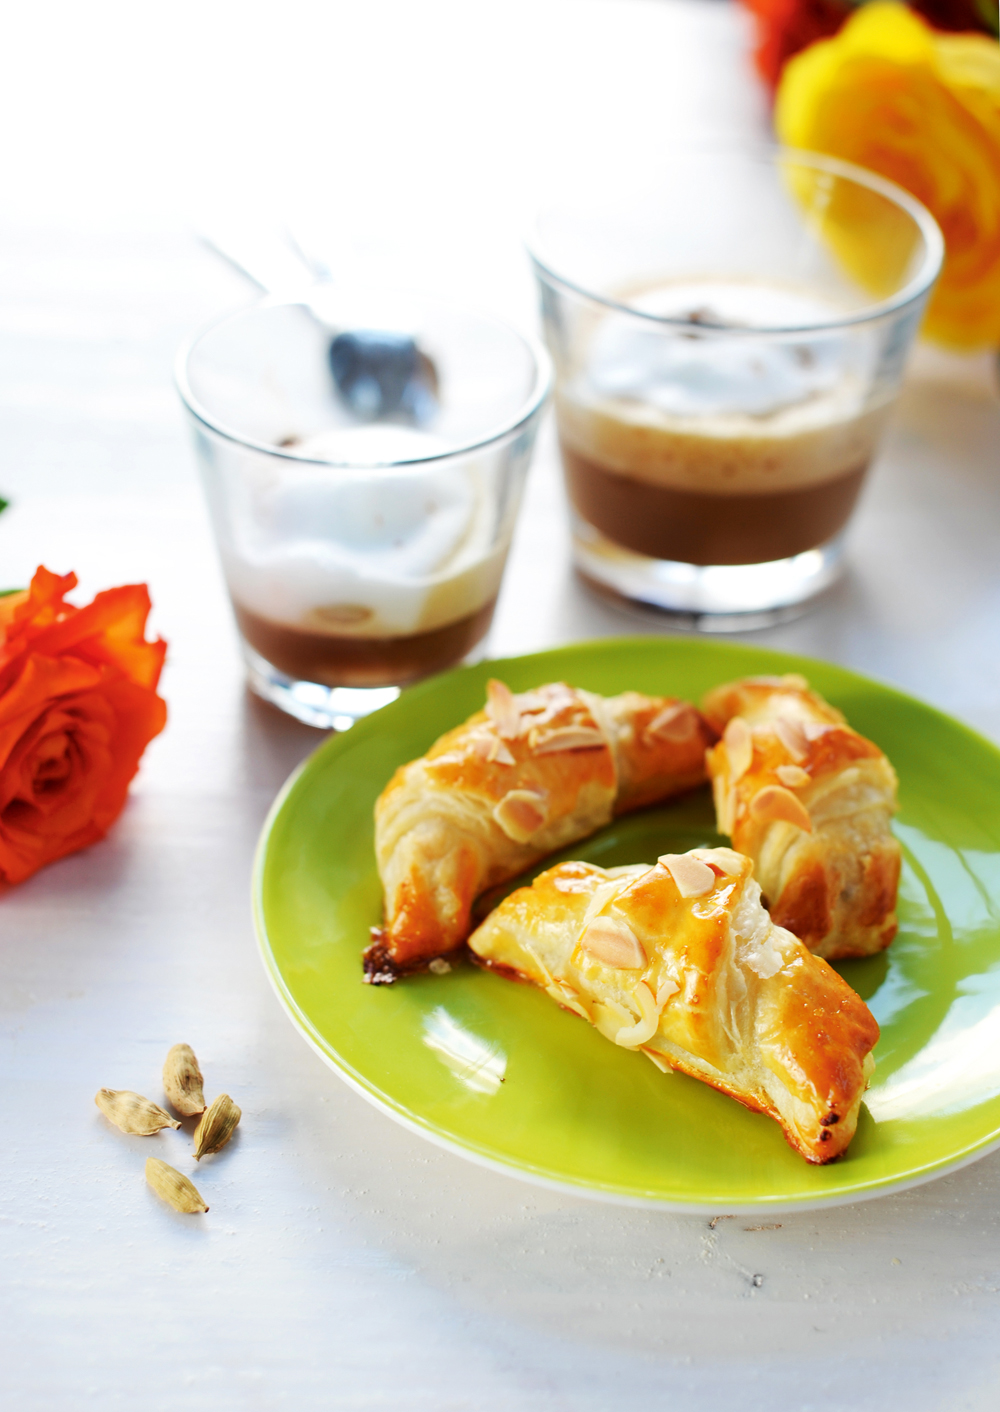 Kardamomos habos kávé és marcipános croissant - két szerelmes recept